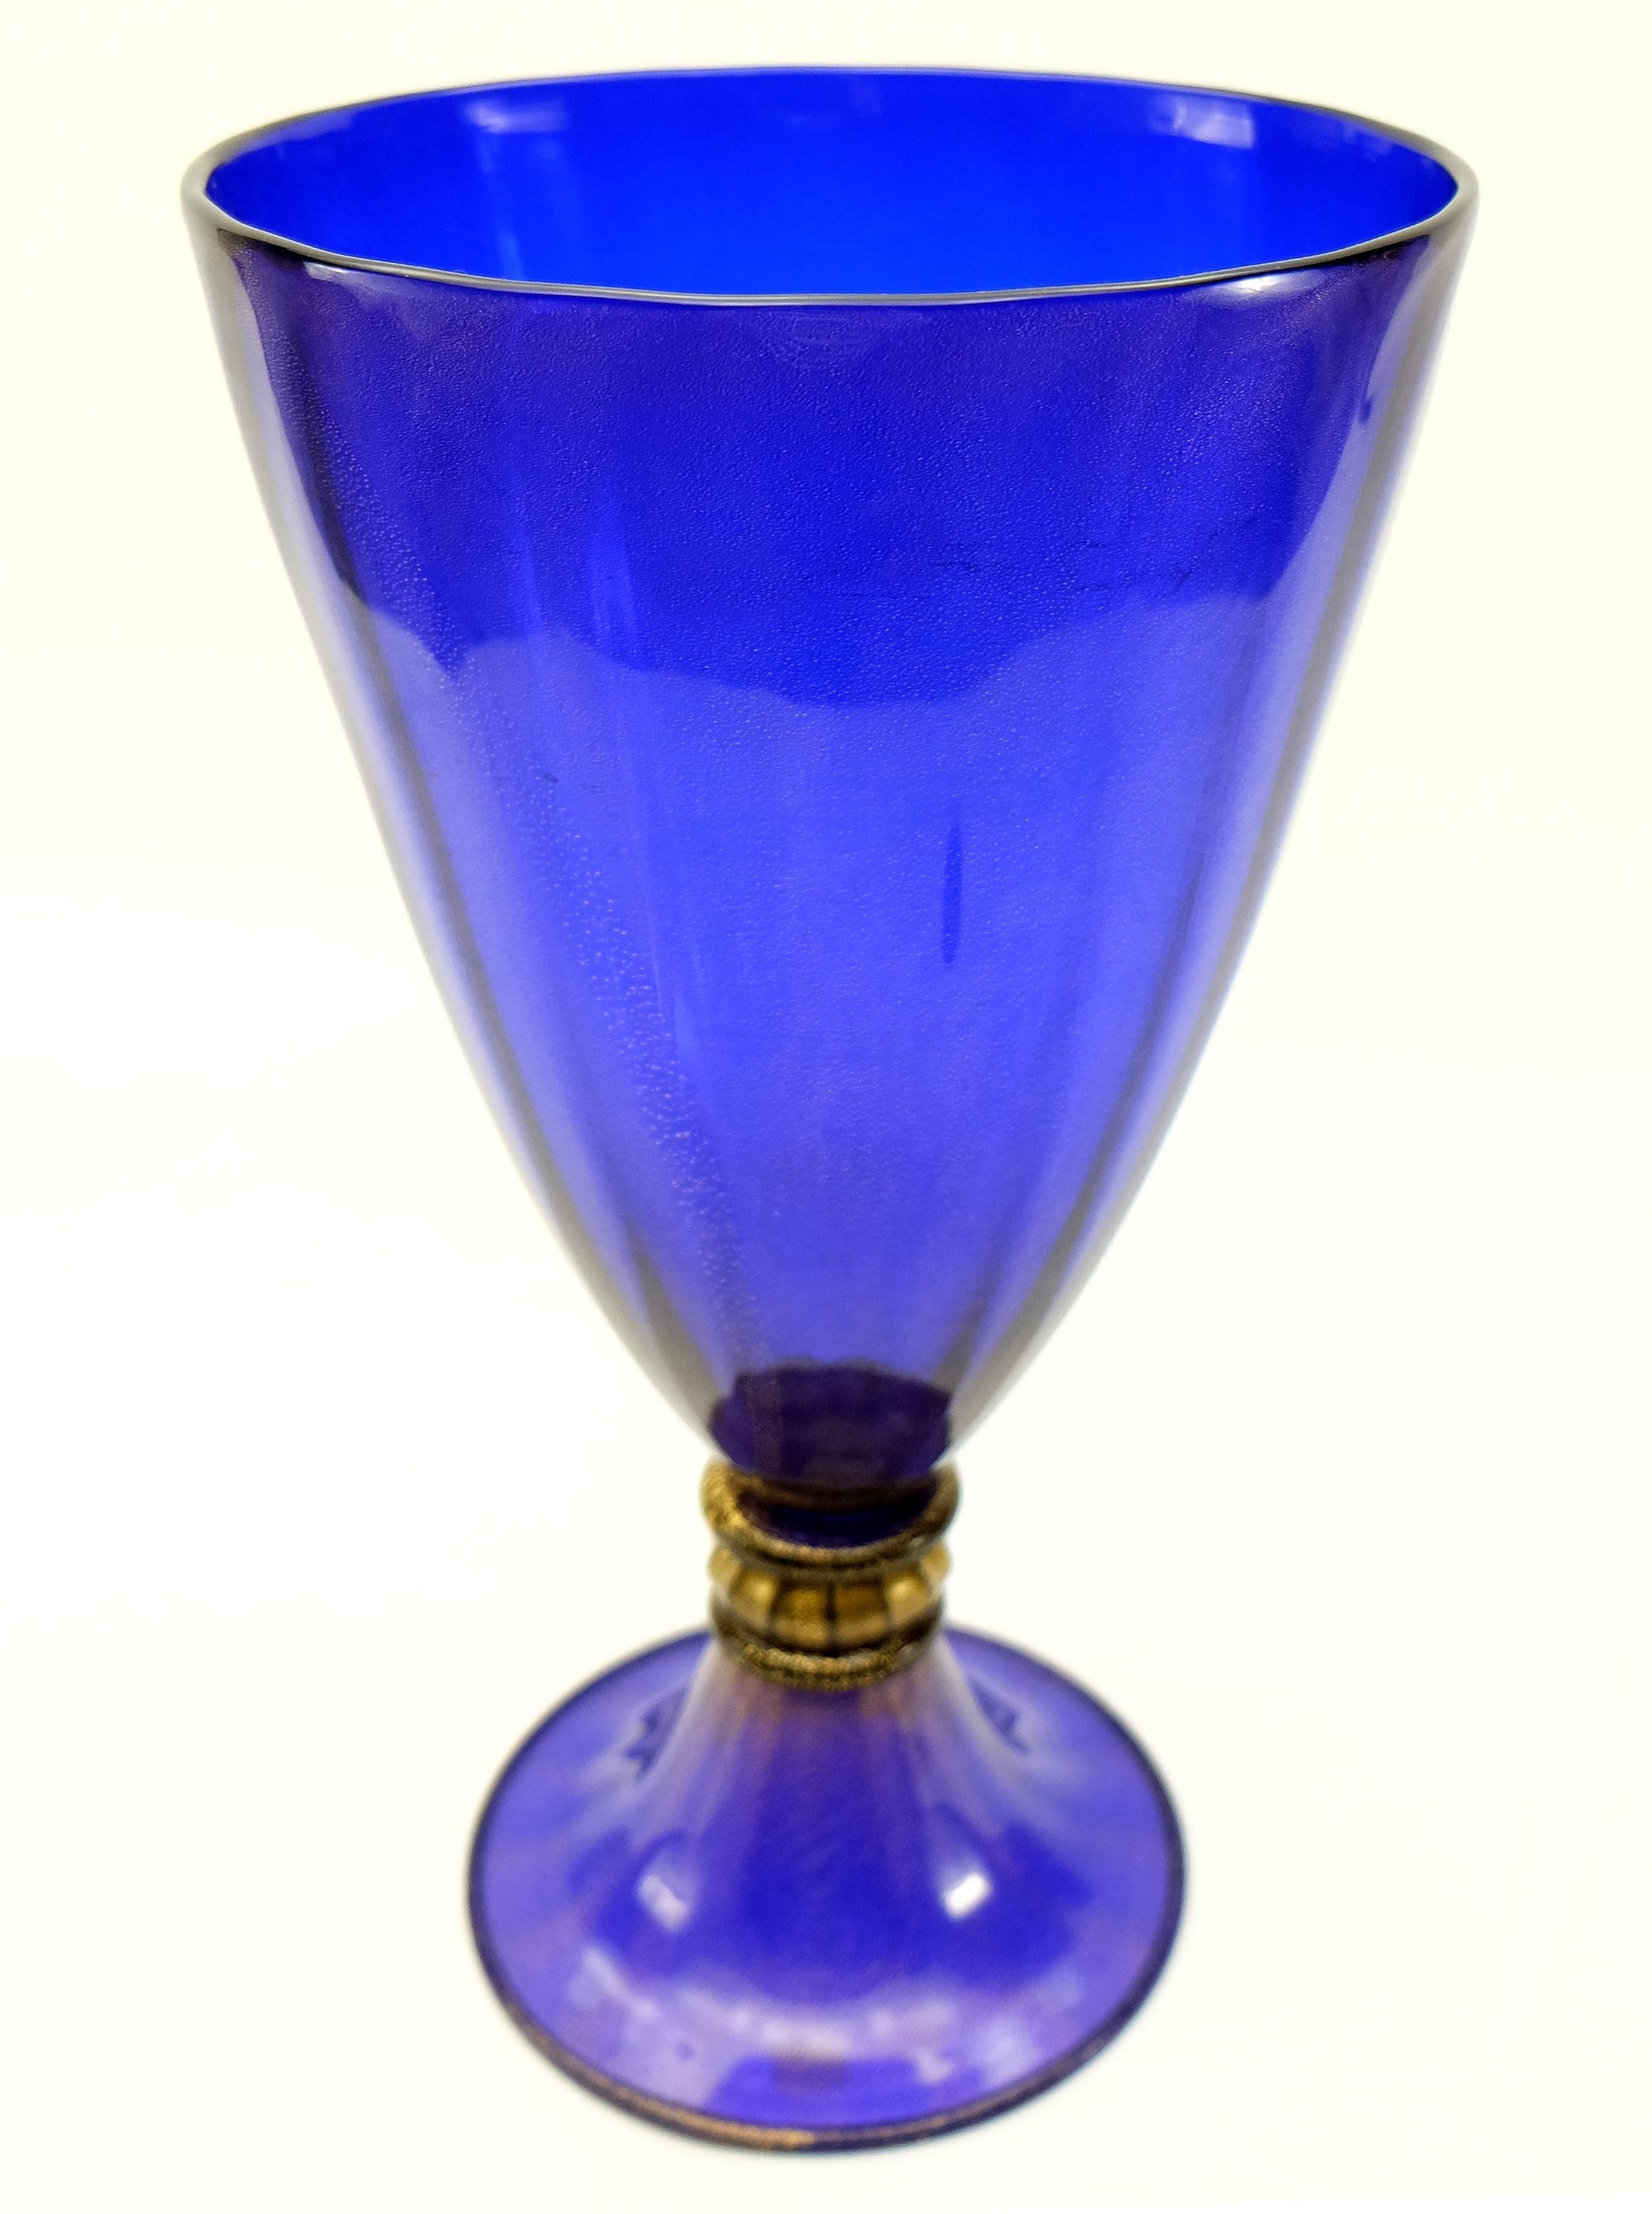 Vase en verre de Murano infusé d'or par Gabbiani Venezia, Italie

Nous proposons à la vente un vase en verre de Murano bleu cobalt infusé d'or par Gabbiani. L'infusion d'or se retrouve dans tout le bleu ainsi que dans le détail d'accentuation